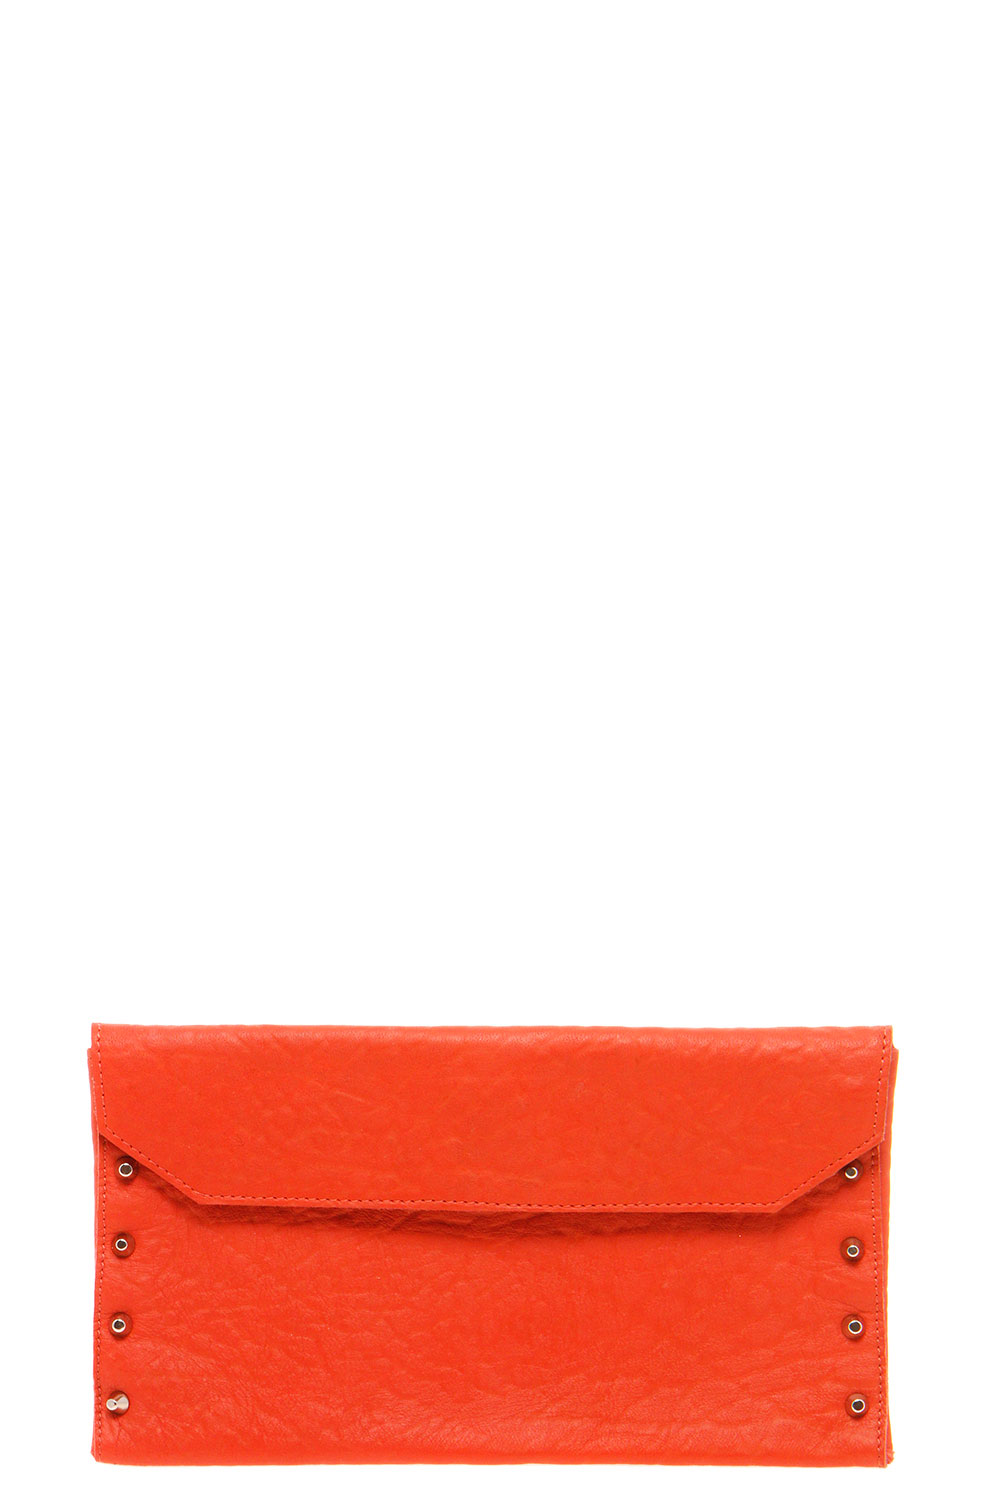 Tilly Leather Stud Clutch Bag - orange